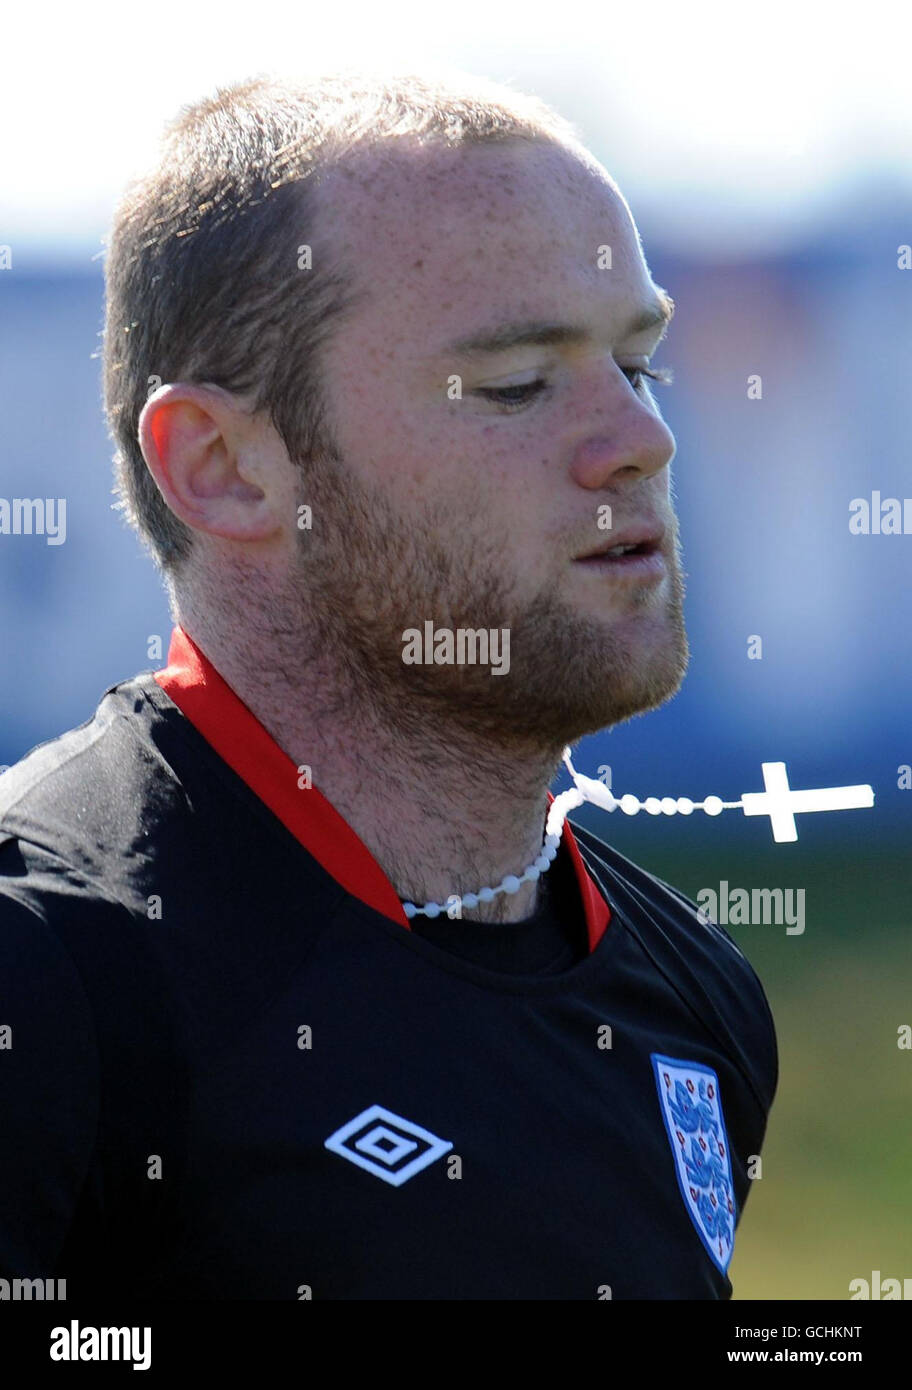 Wayne Rooney in Inghilterra indossa una croce sulla sua collana durante una sessione di allenamento al Royal Bafokeng Sports Complex, Rustenburg, Sudafrica. Foto Stock